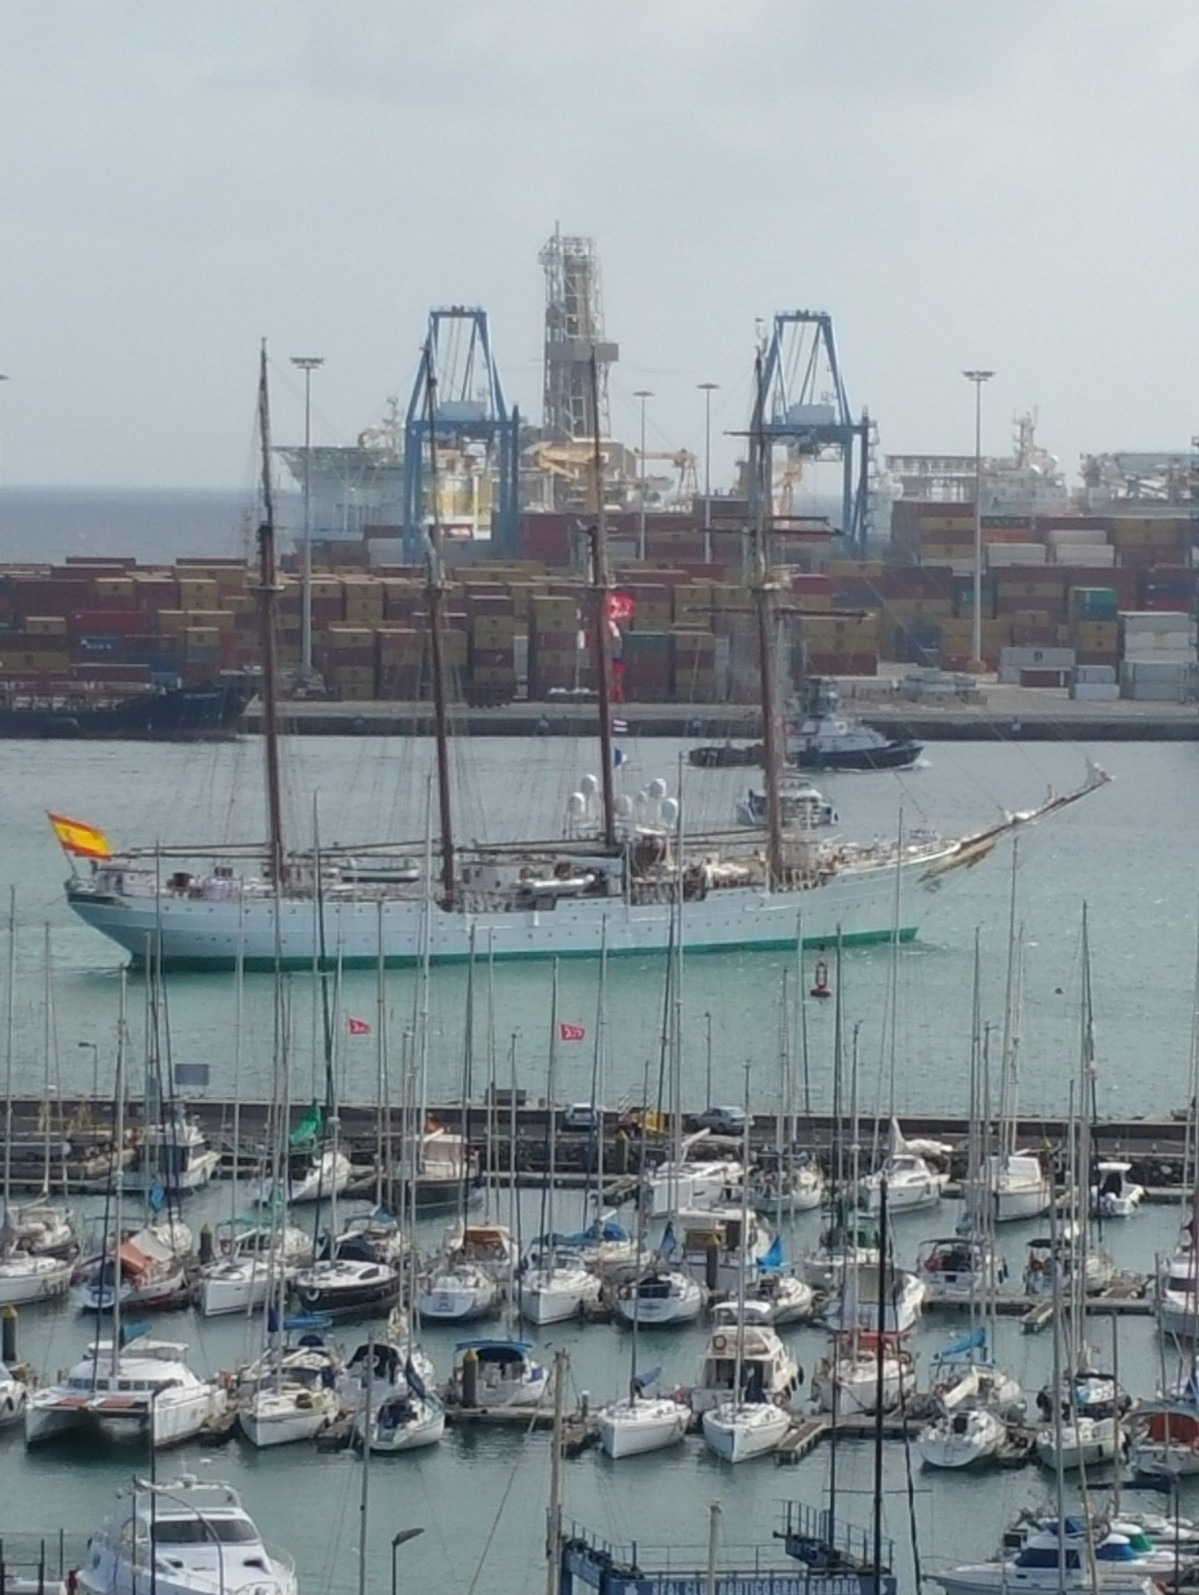 Puerto de Las Palmas   Juan Sebastiu0301au0301n Elcano 2019